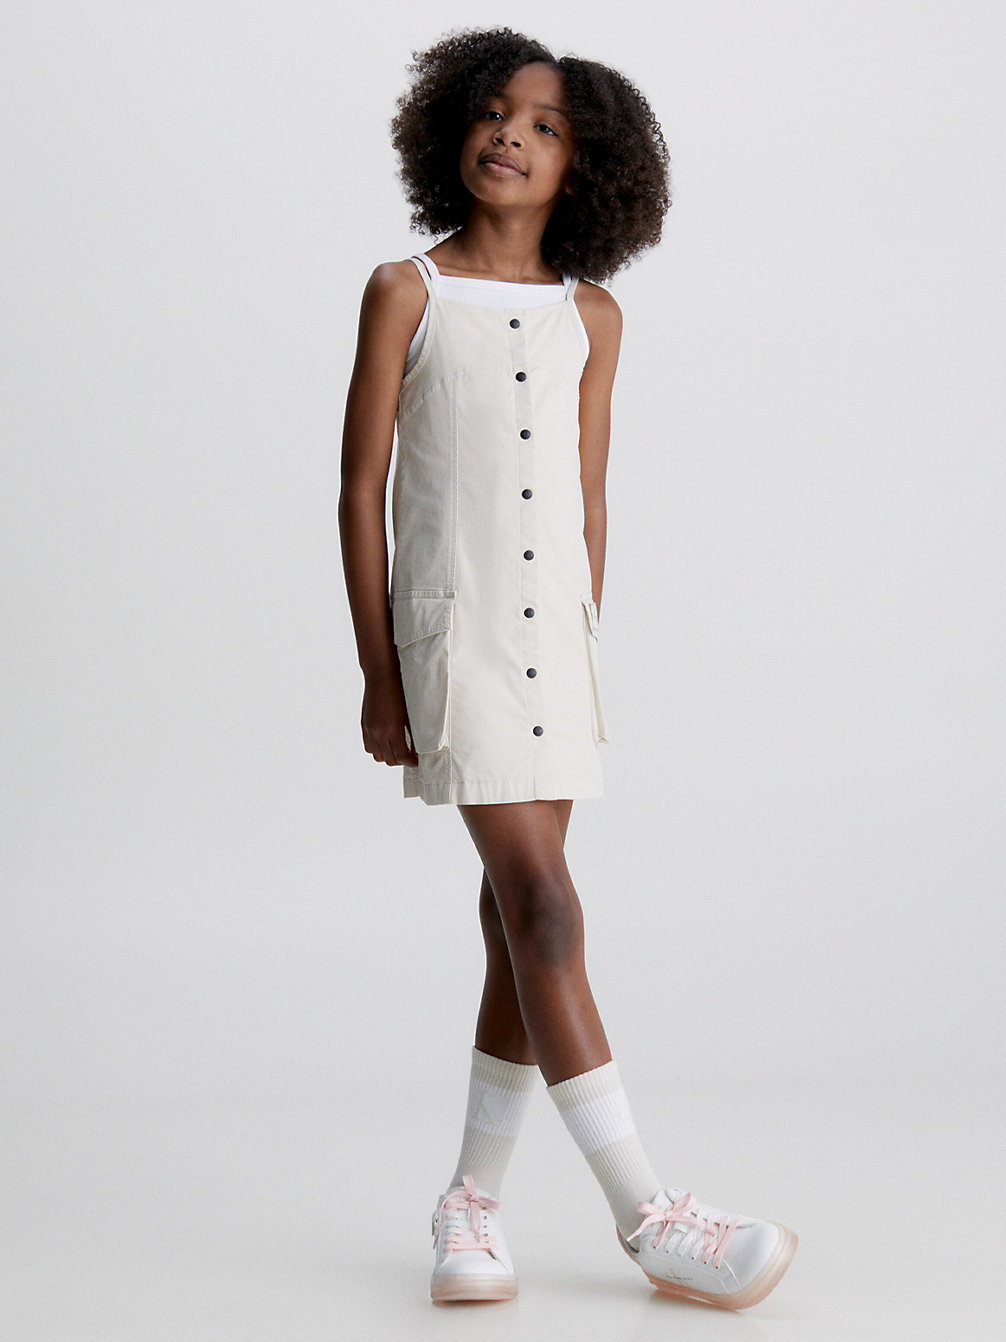 CLASSIC BEIGE Button Down Strap Dress undefined girls Calvin Klein